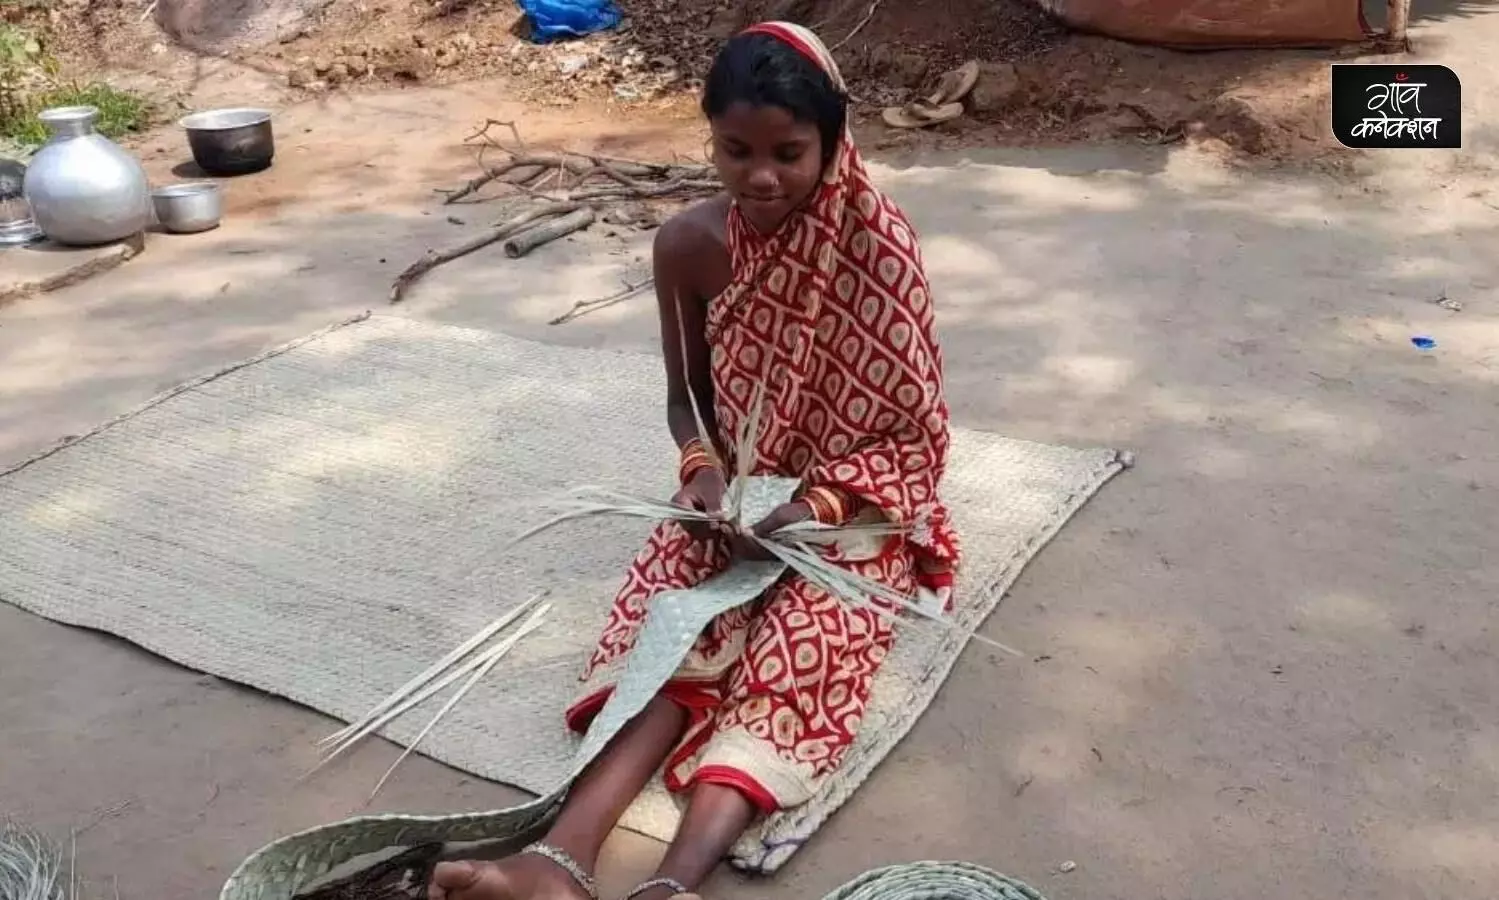 ओडिशा: सड़कों पर कलाबाजी दिखाने से लेकर चटाई बनाने का सफर, एक आदिवासी समुदाय की कहानी